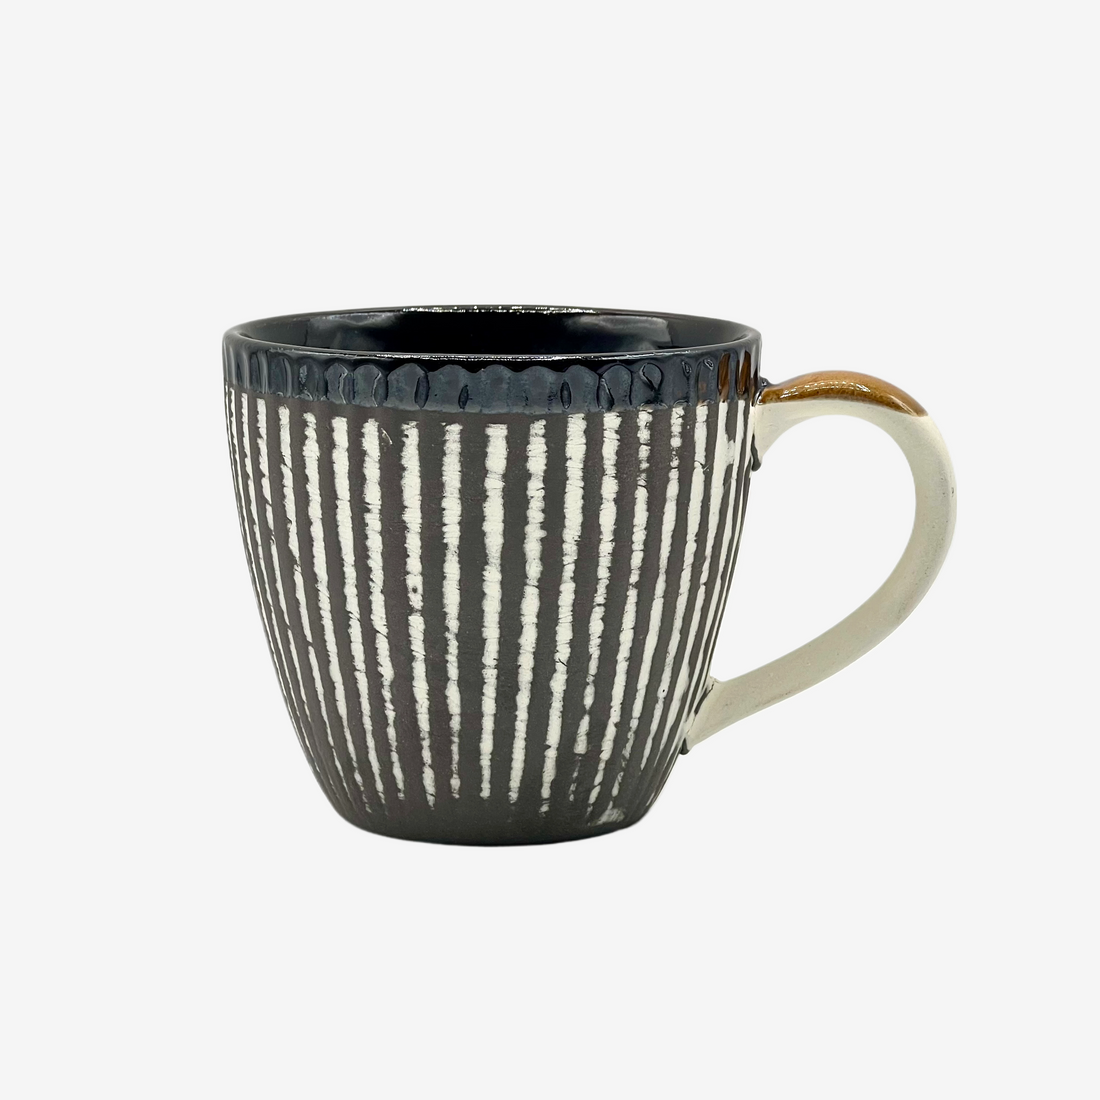 Kesho White Black Stripe Mug - Japanese Tea Mug